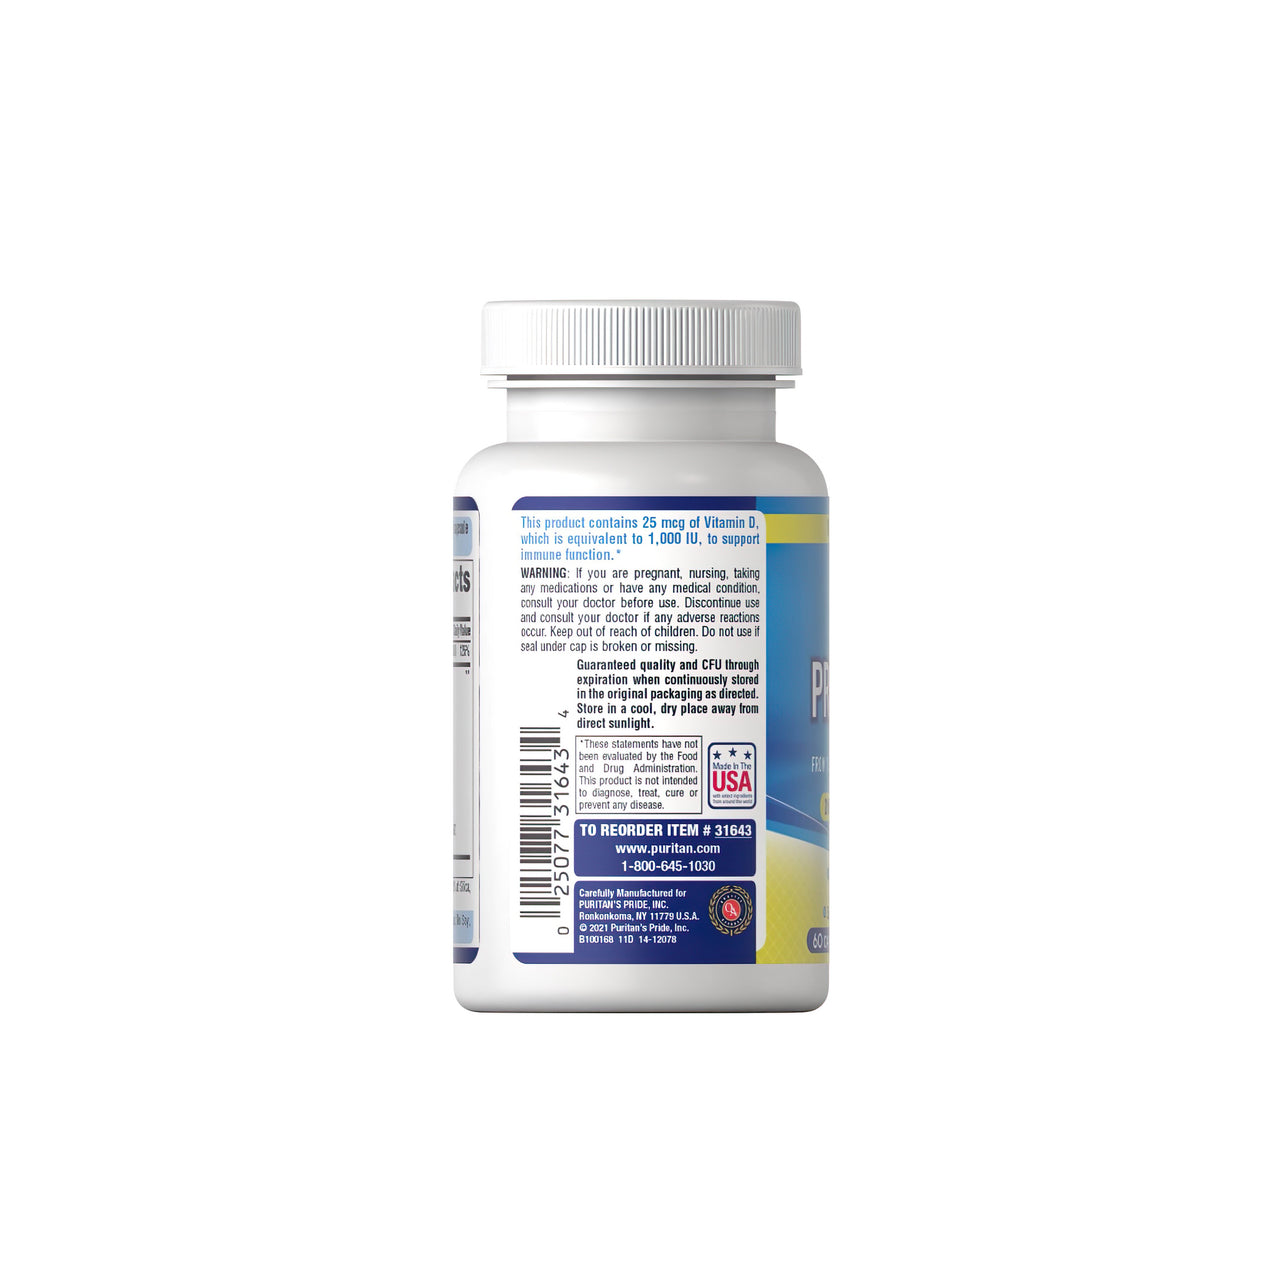 Une bouteille de Probiotic 10 Plus Vitamin D3 1000 IU 60 caps, un puissant stimulant immunitaire, sur un fond blanc. (Nom de marque : Puritan's Pride)